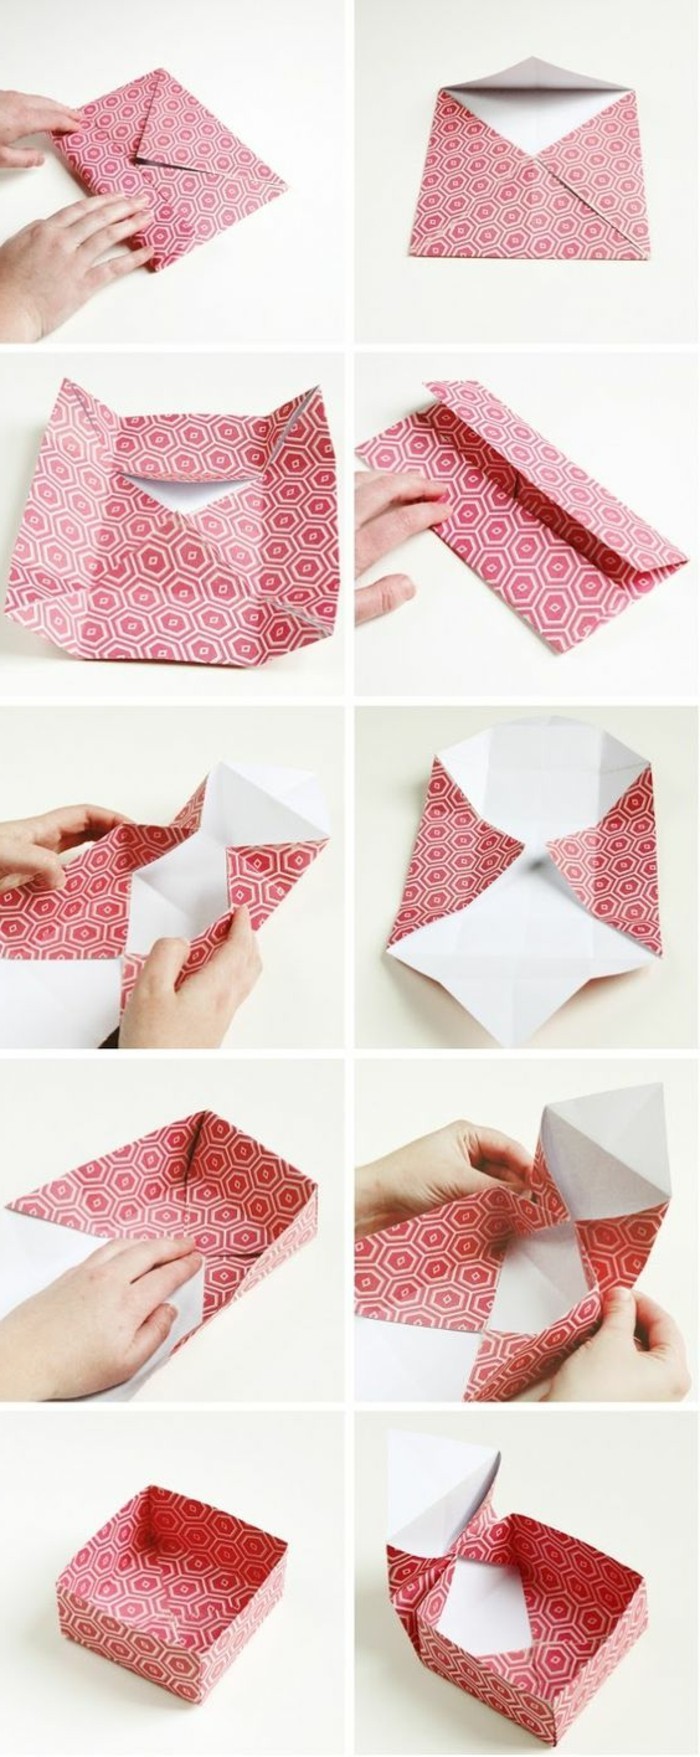 στοιχεία origami κουτί origami-diy δώρο origami origami-με-χαρτί μοτίβο